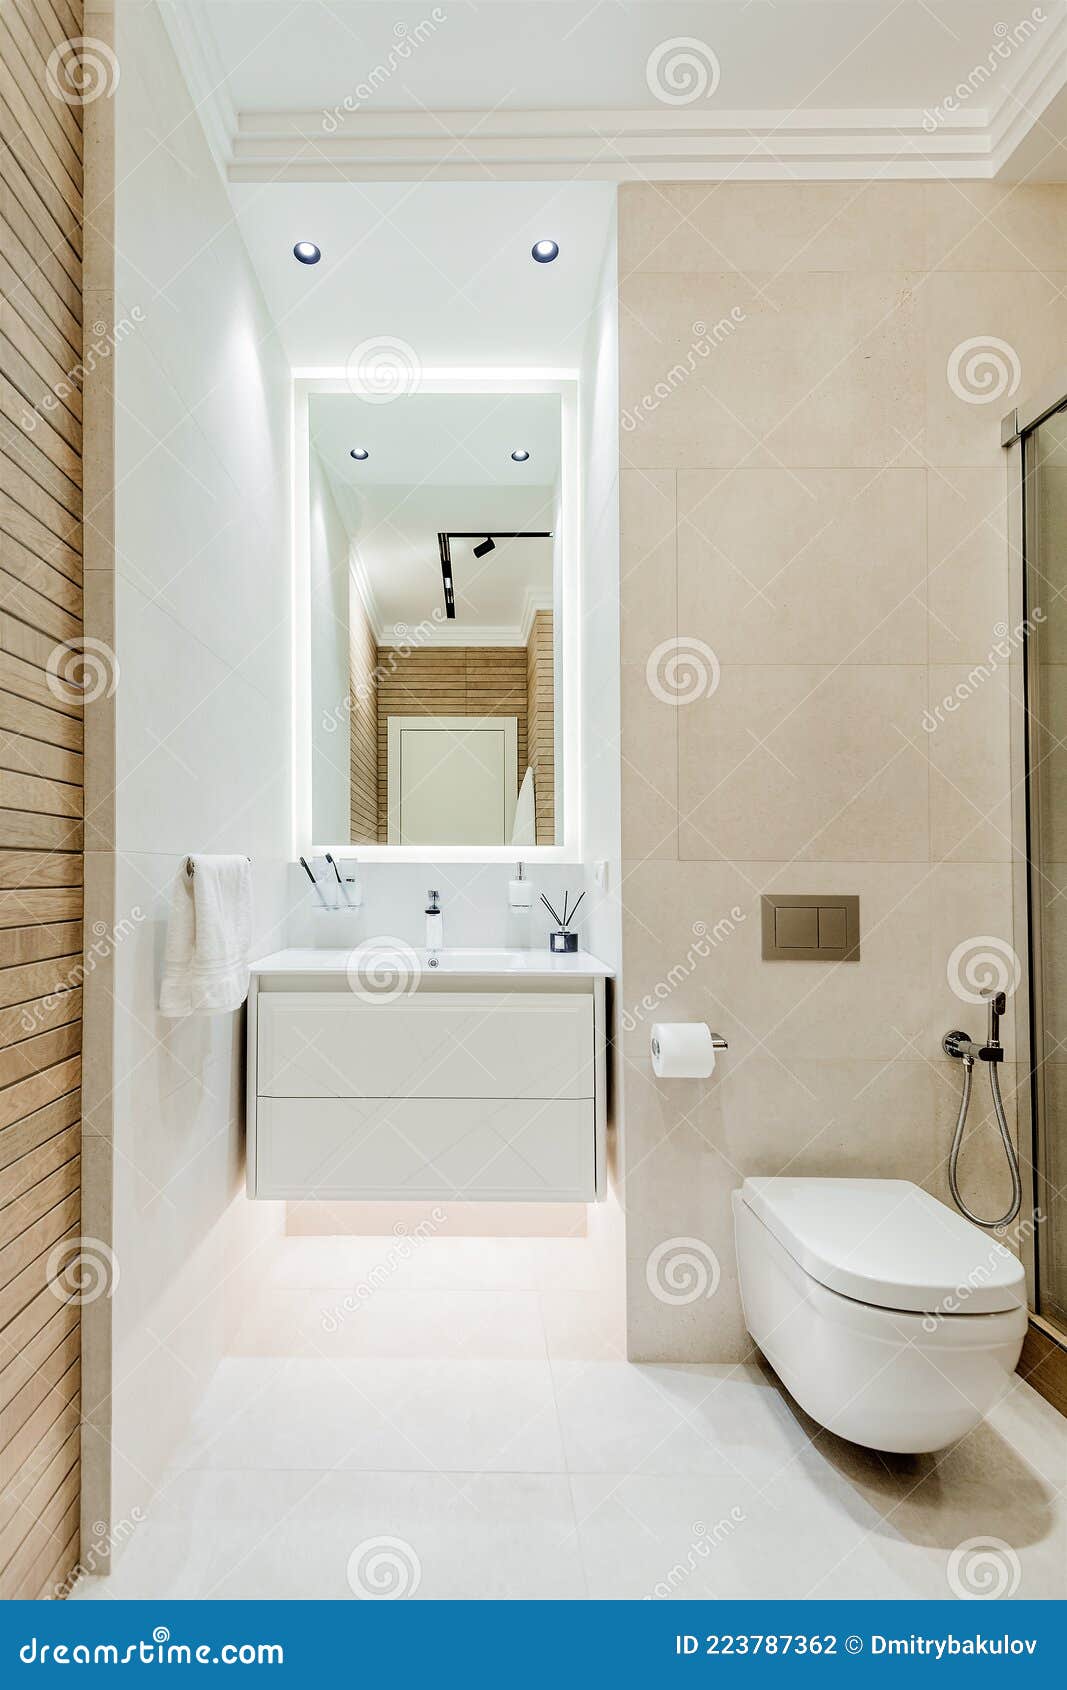 https://thumbs.dreamstime.com/z/decoraci%C3%B3n-moderna-de-ba%C3%B1o-con-lavabo-y-aseo-blancos-estilo-blanco-adornos-madera-223787362.jpg